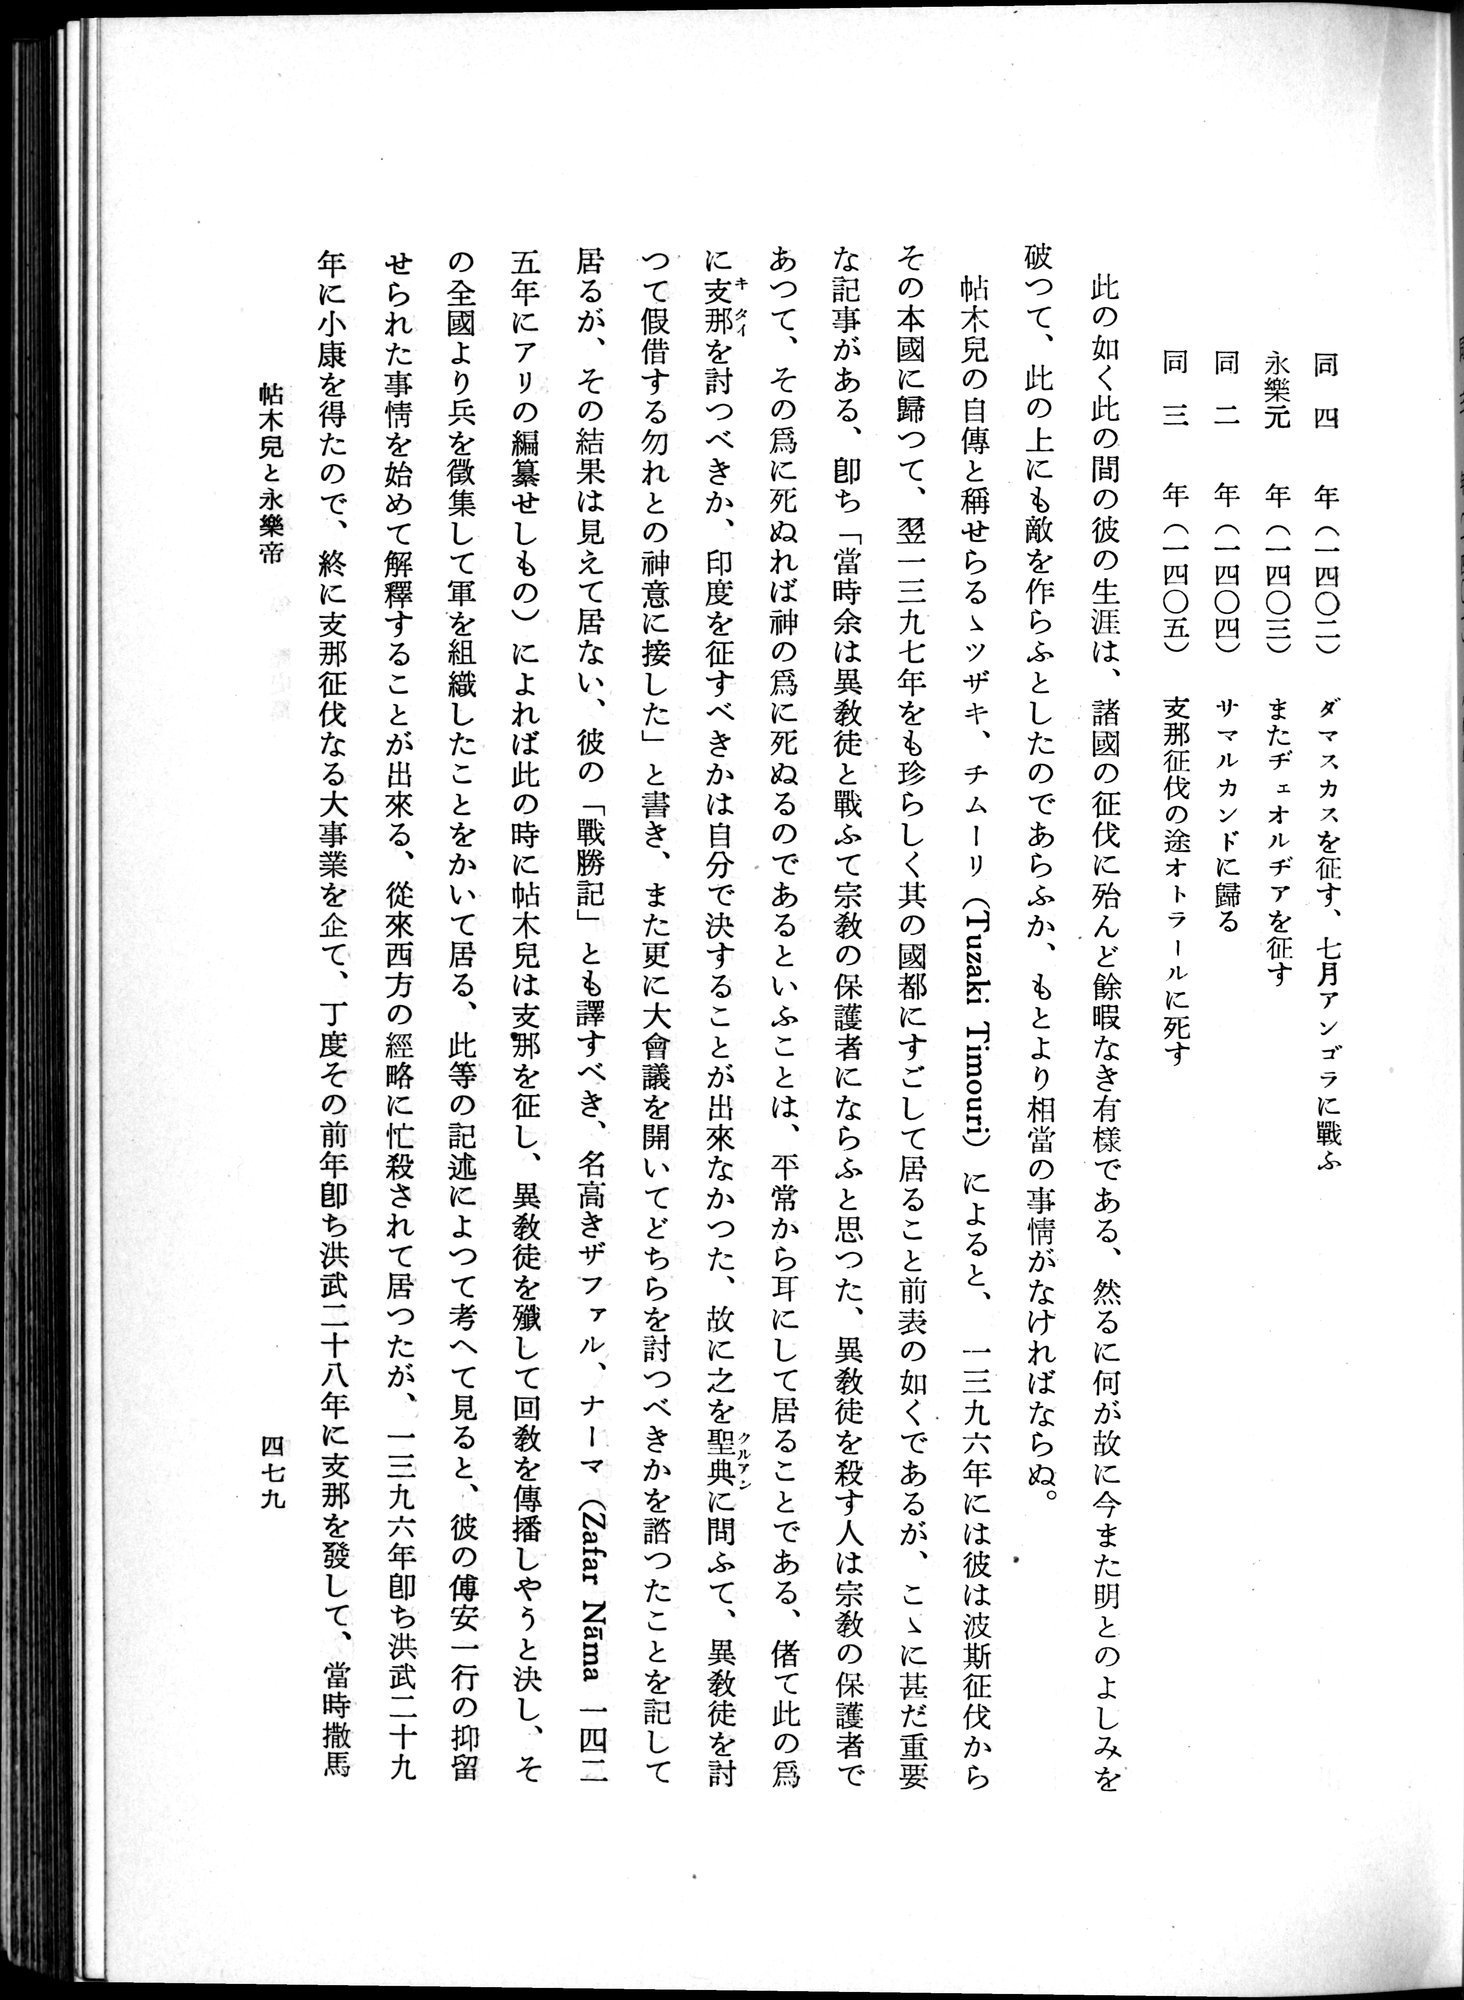 羽田博士史学論文集 : vol.1 / Page 517 (Grayscale High Resolution Image)